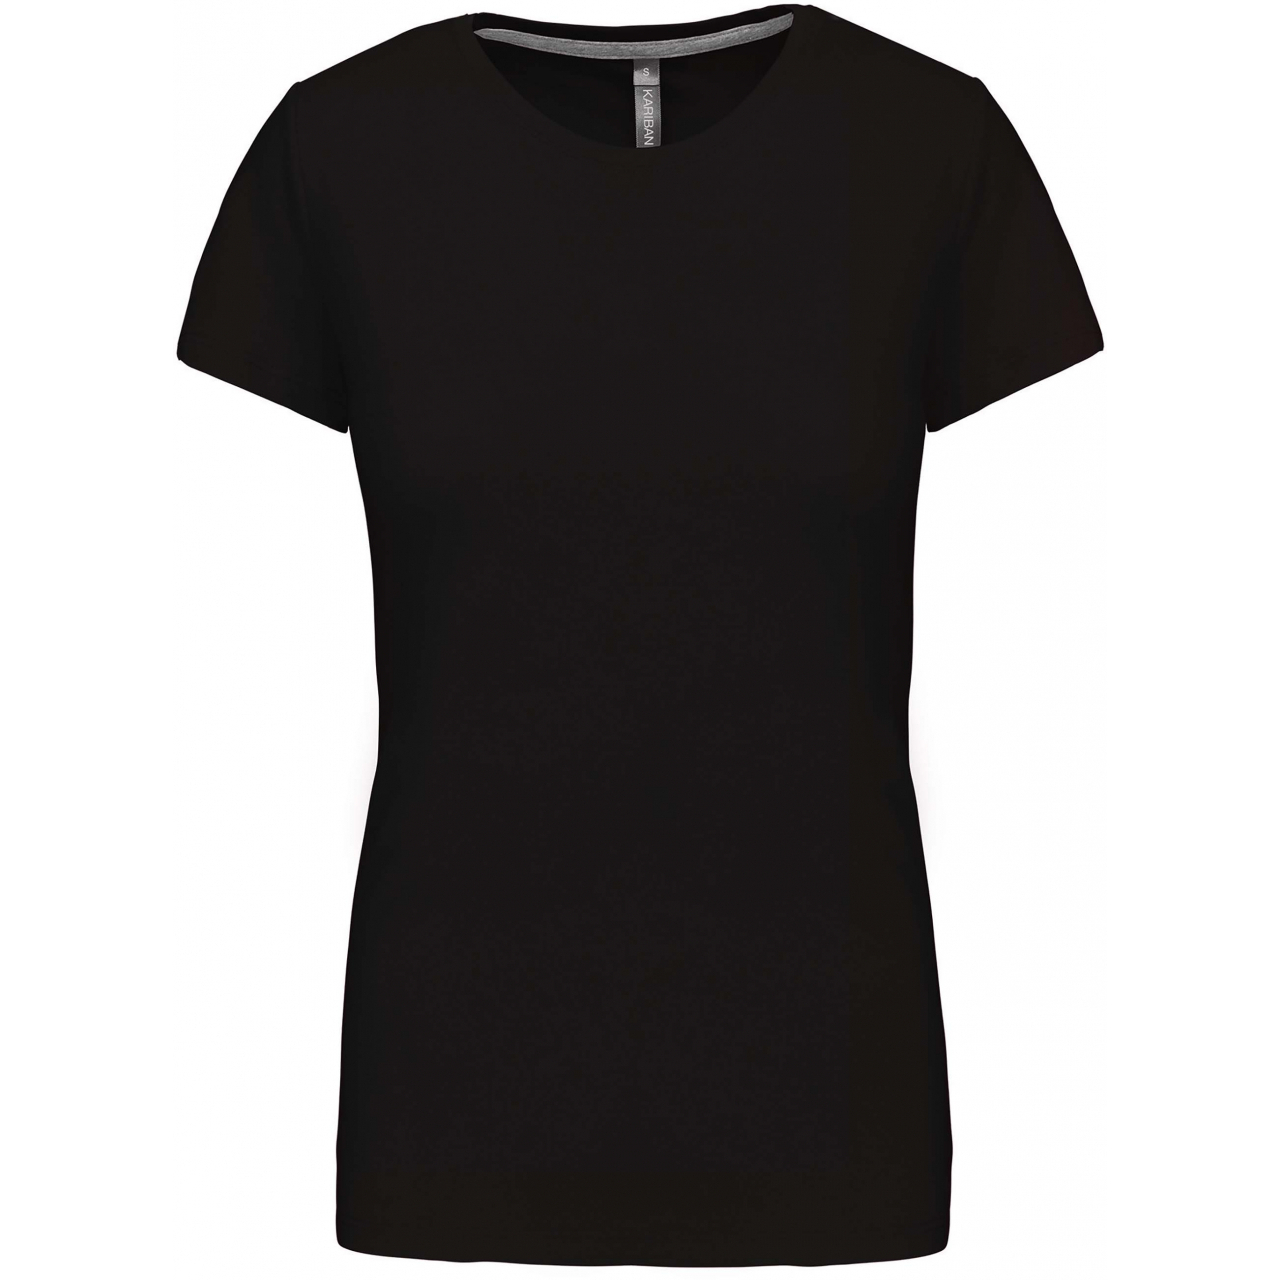 Dámské tričko Kariban s krátkým rukávem - černé, L